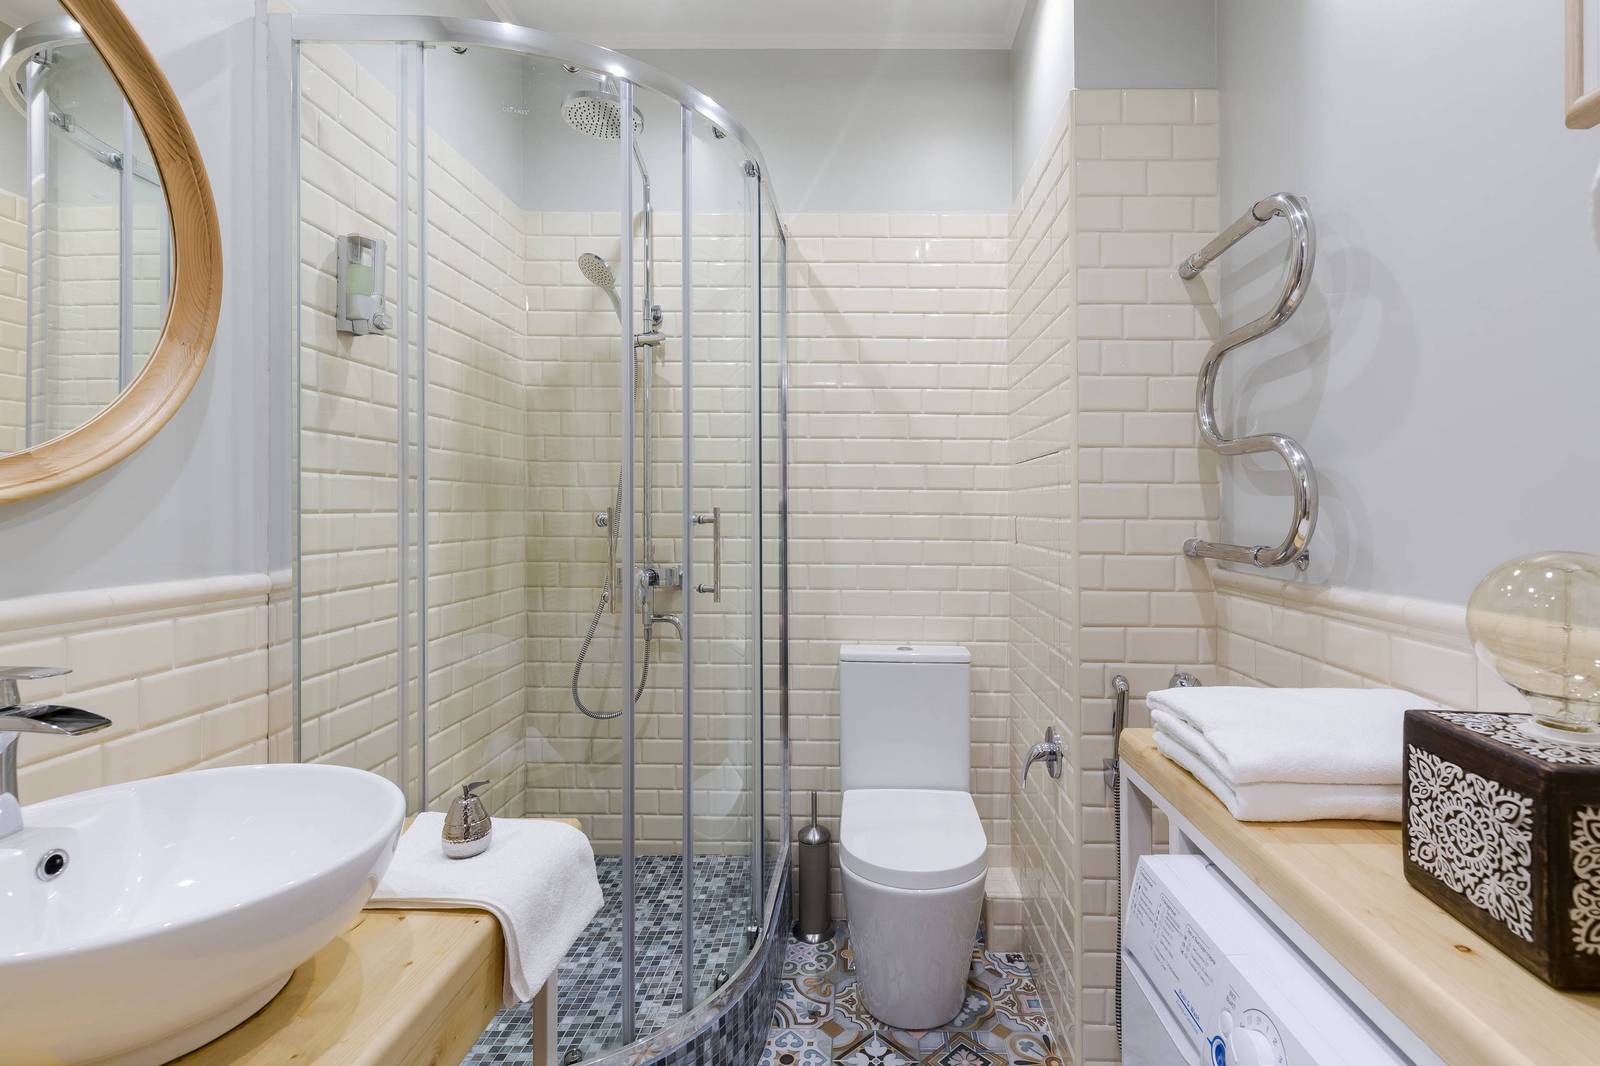 Buồng tắm đứng được thiết kế nâng sàn với cửa kính trong suốt giúp phân vùng với toilet. Gạch ốp tường màu be với độ bóng phản chiếu ánh sáng đẹp mắt, gạch lát sàn buồng tắm cũng có sự khác biệt với tổng thể để tạo điểm nhấn.